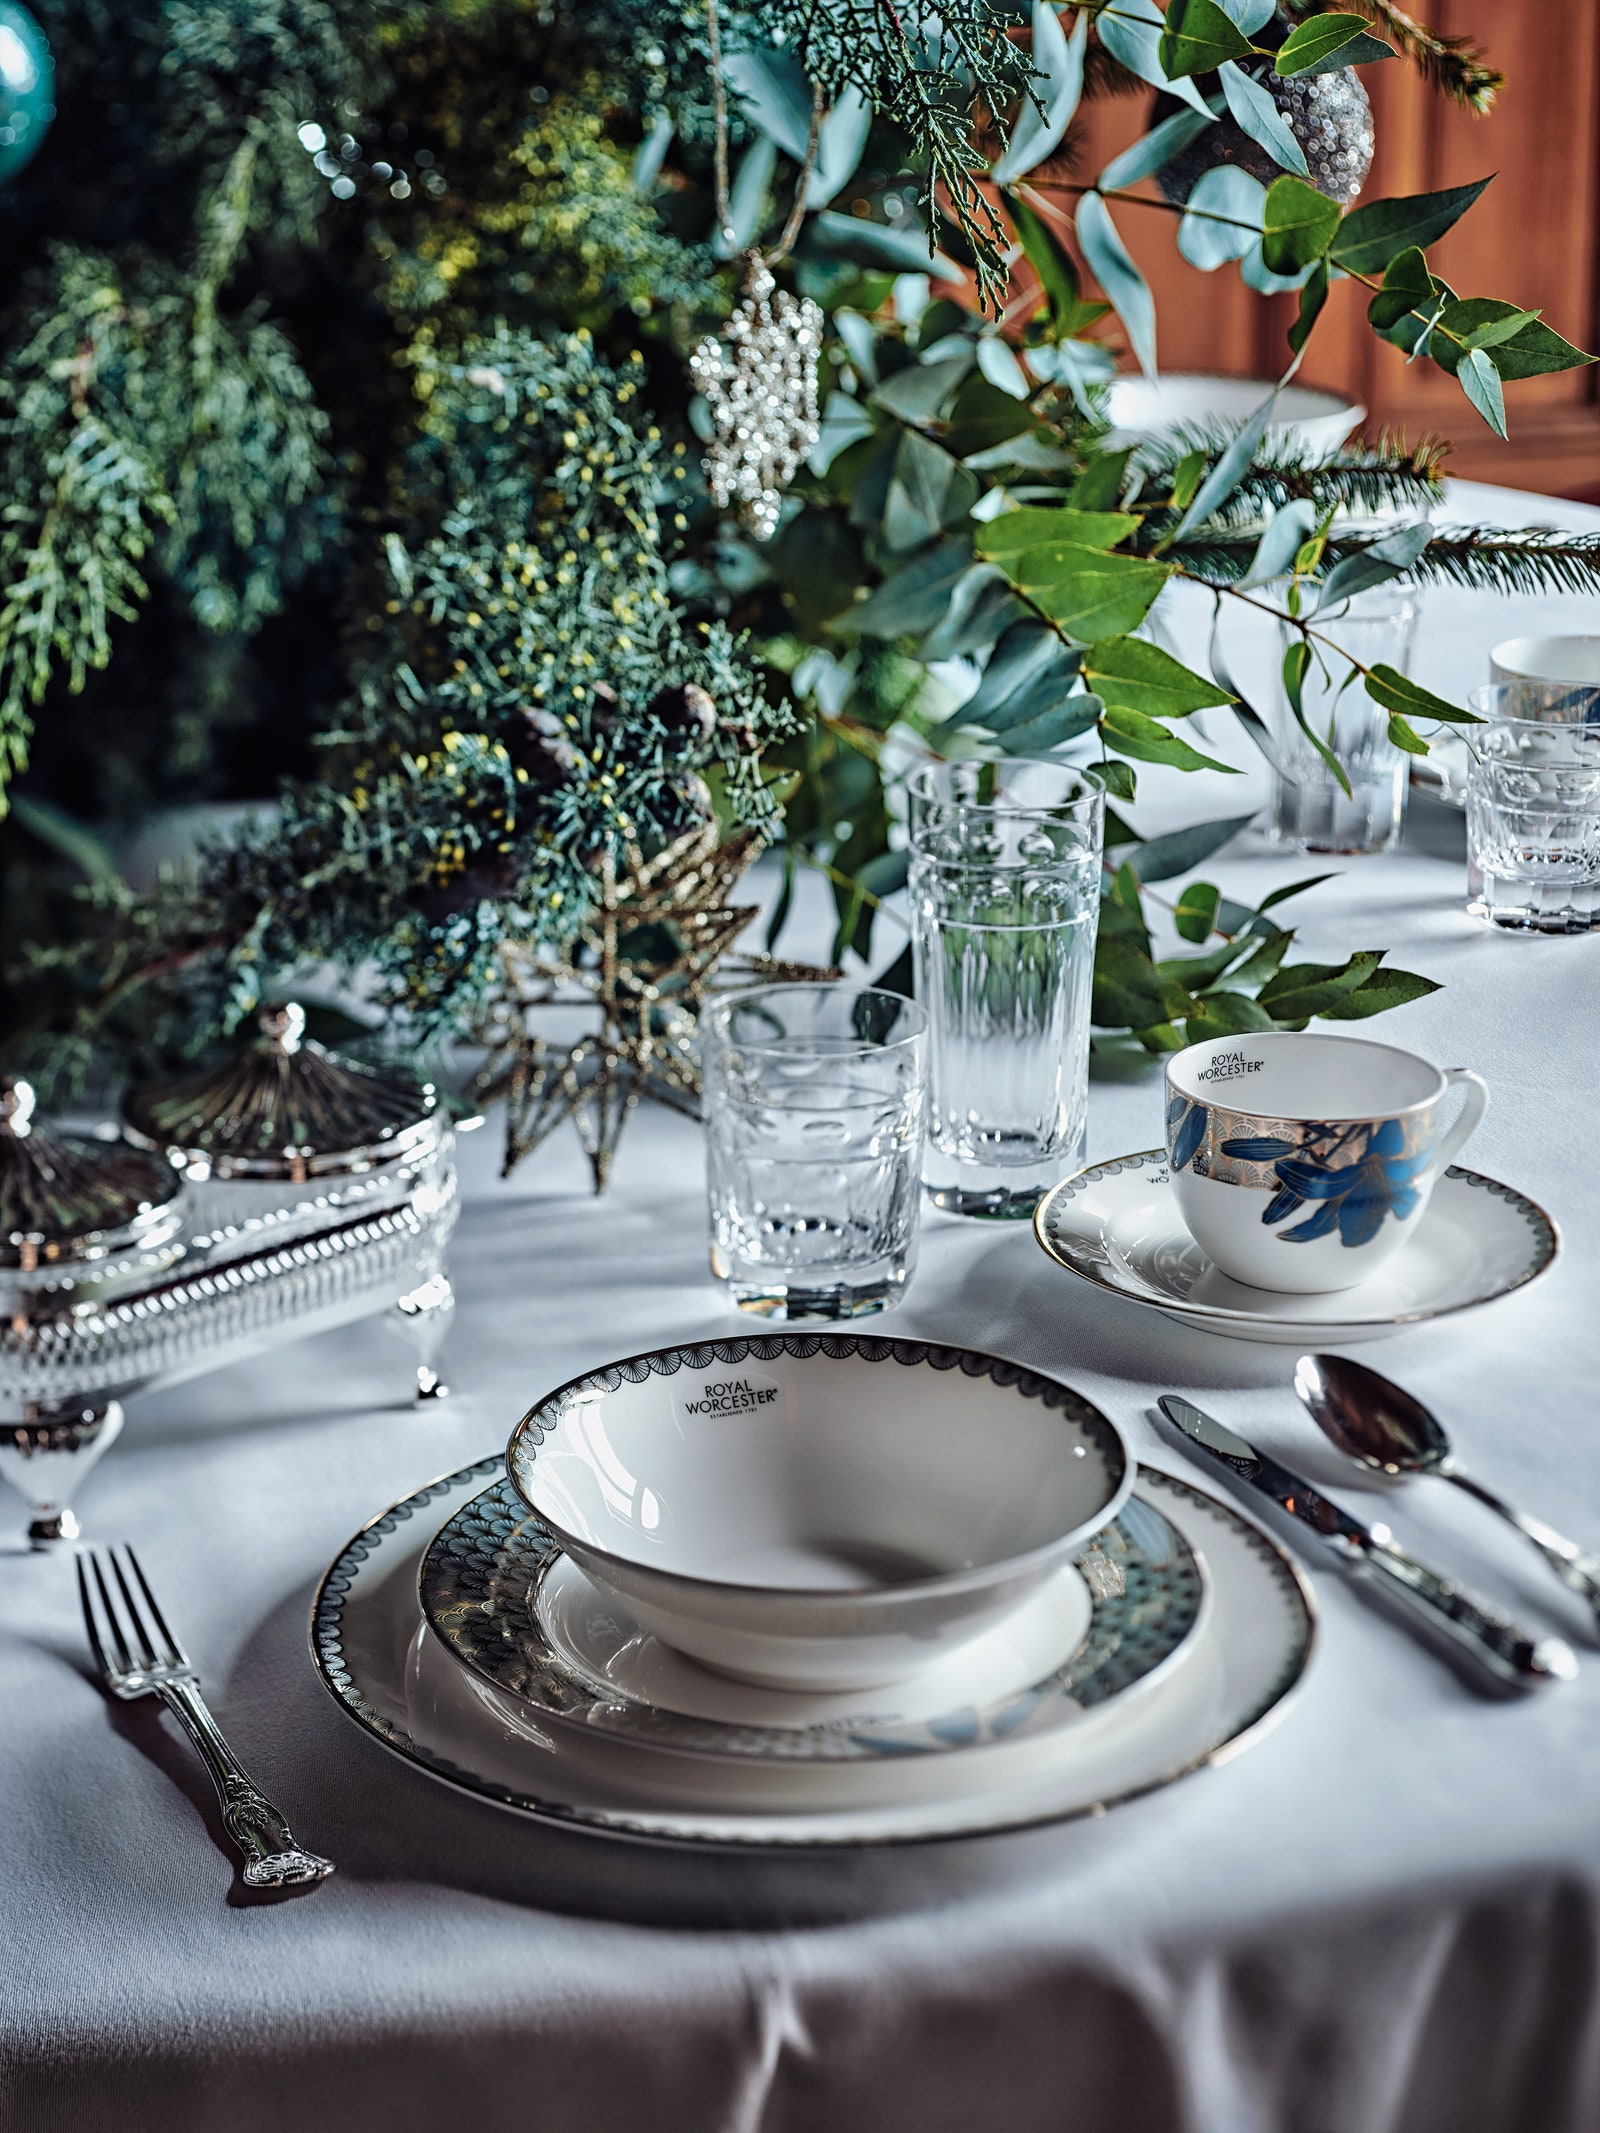 Новогодняя сказка поанглийски сервировка праздничного завтрака чаепития и ужина в резиденции посла Великобритании